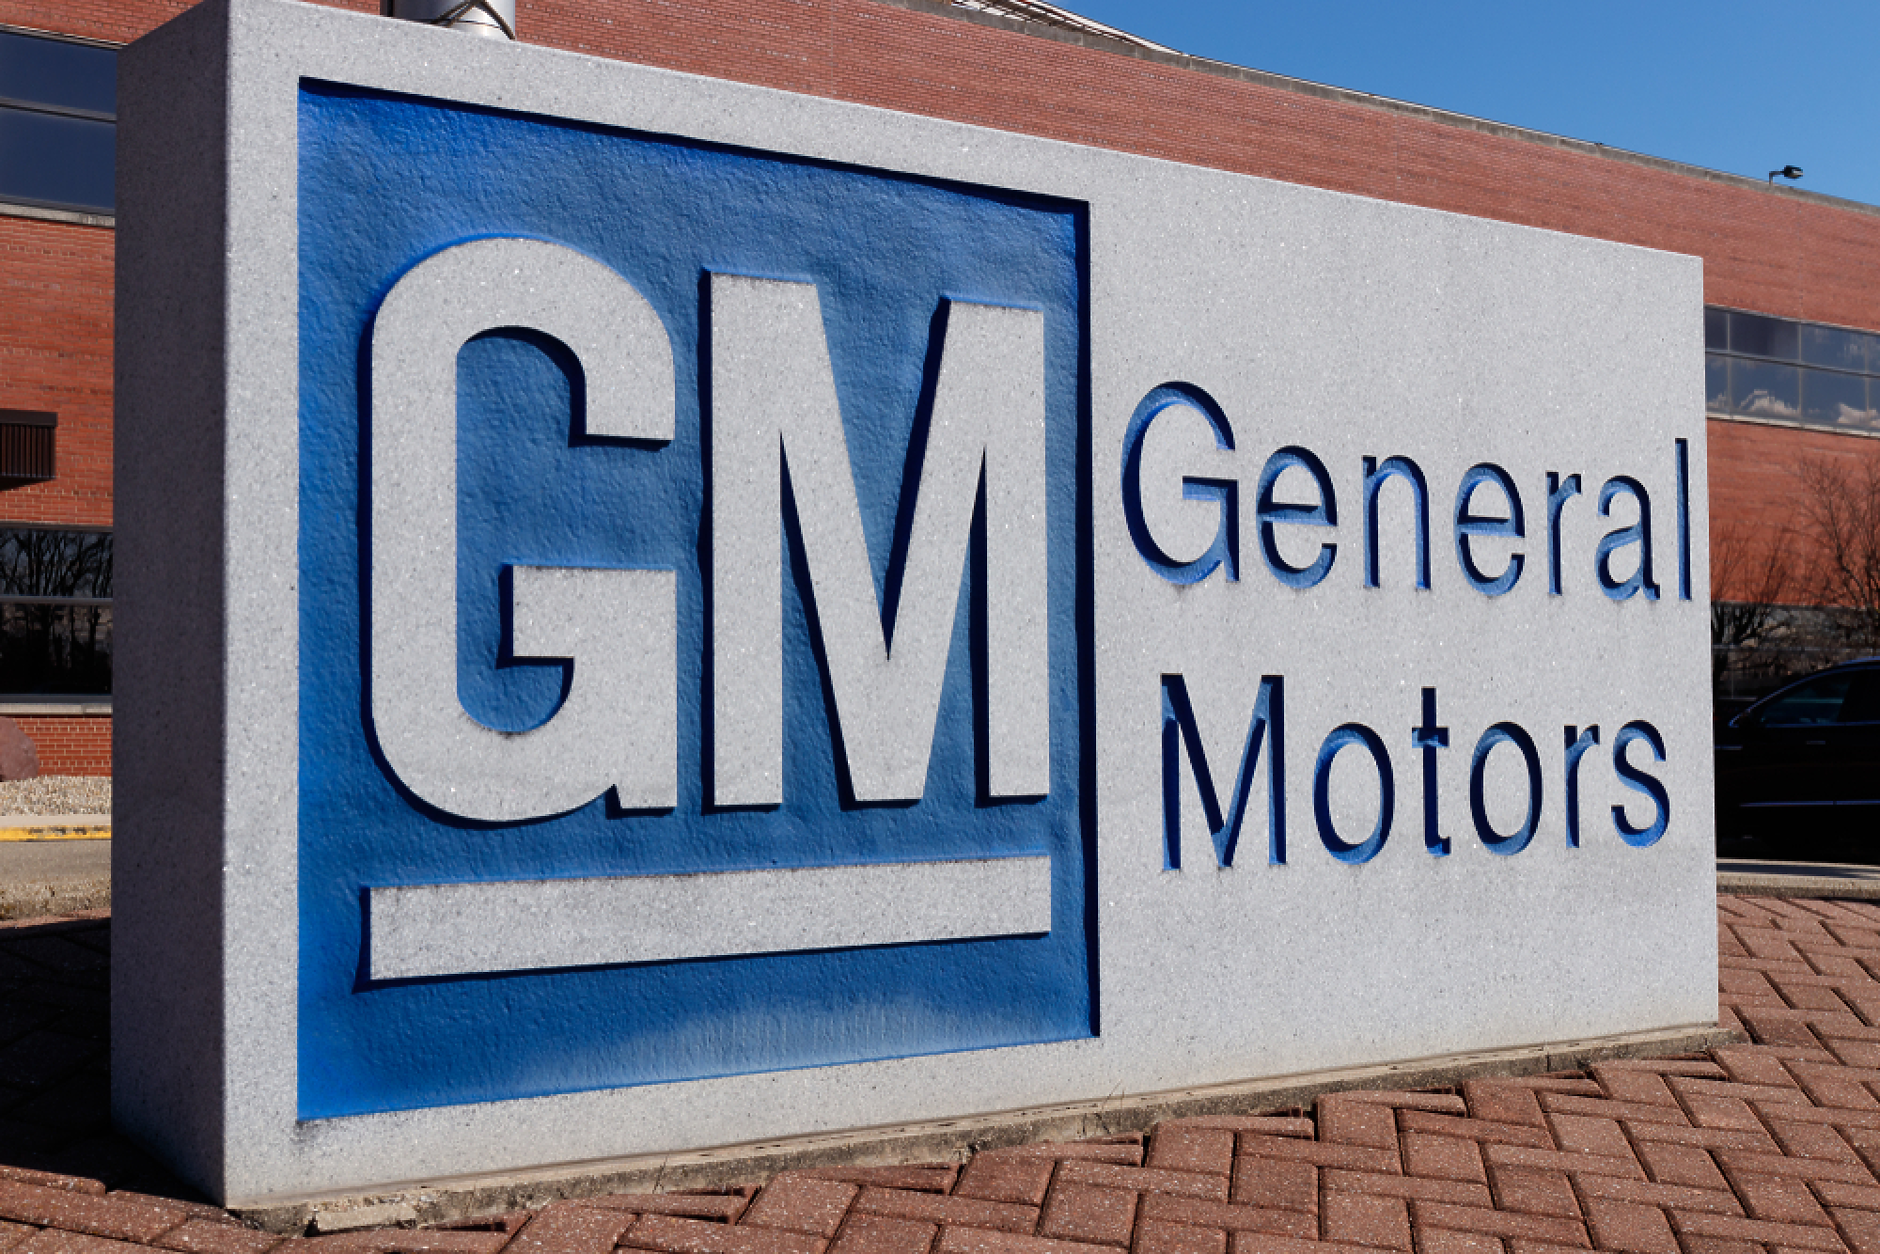  General Motors увеличи продажбите на автомобили с 18% за три месеца